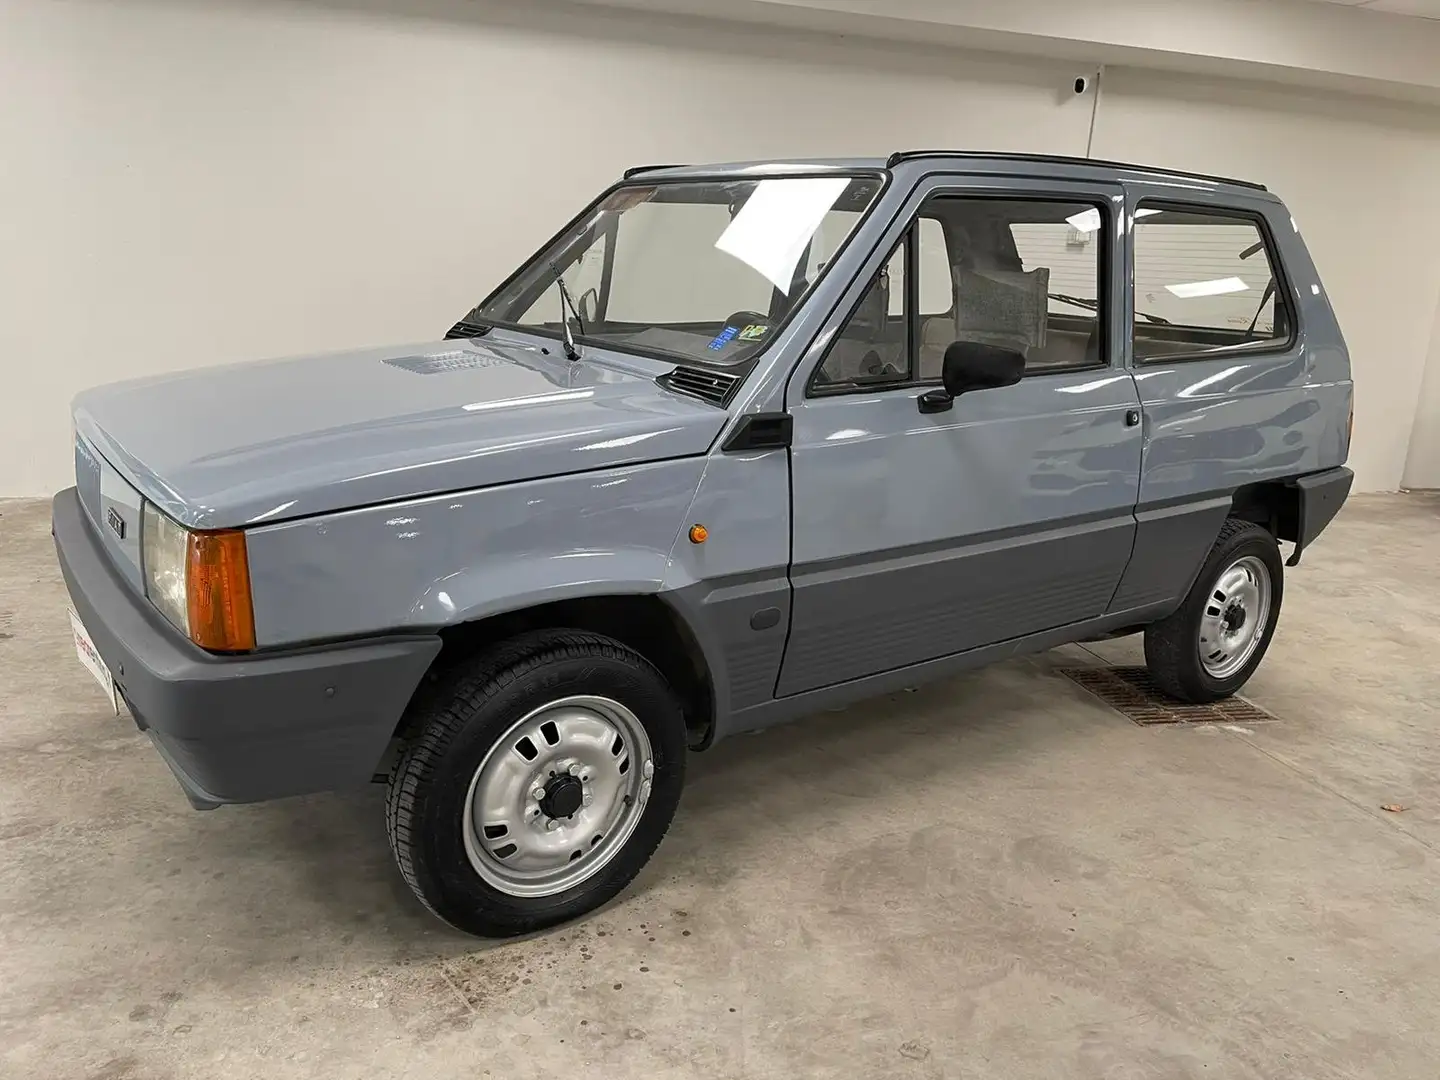 Fiat Panda 30 prima serie interni originali - Uniproprietario Grigio - 2